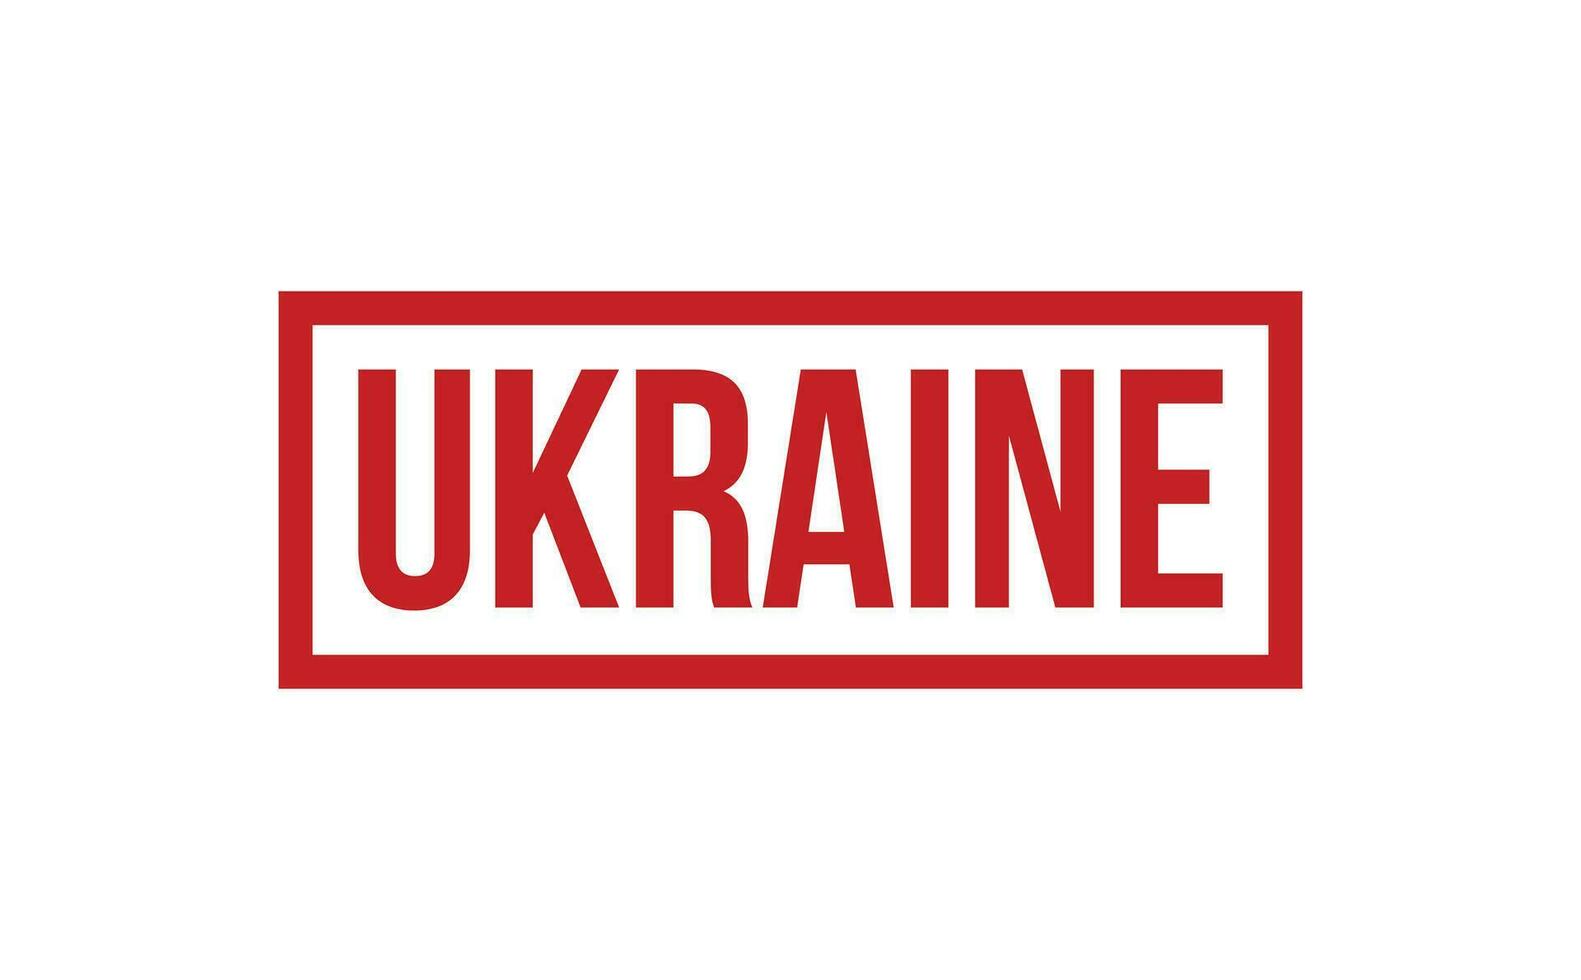 Ucrania caucho sello sello vector